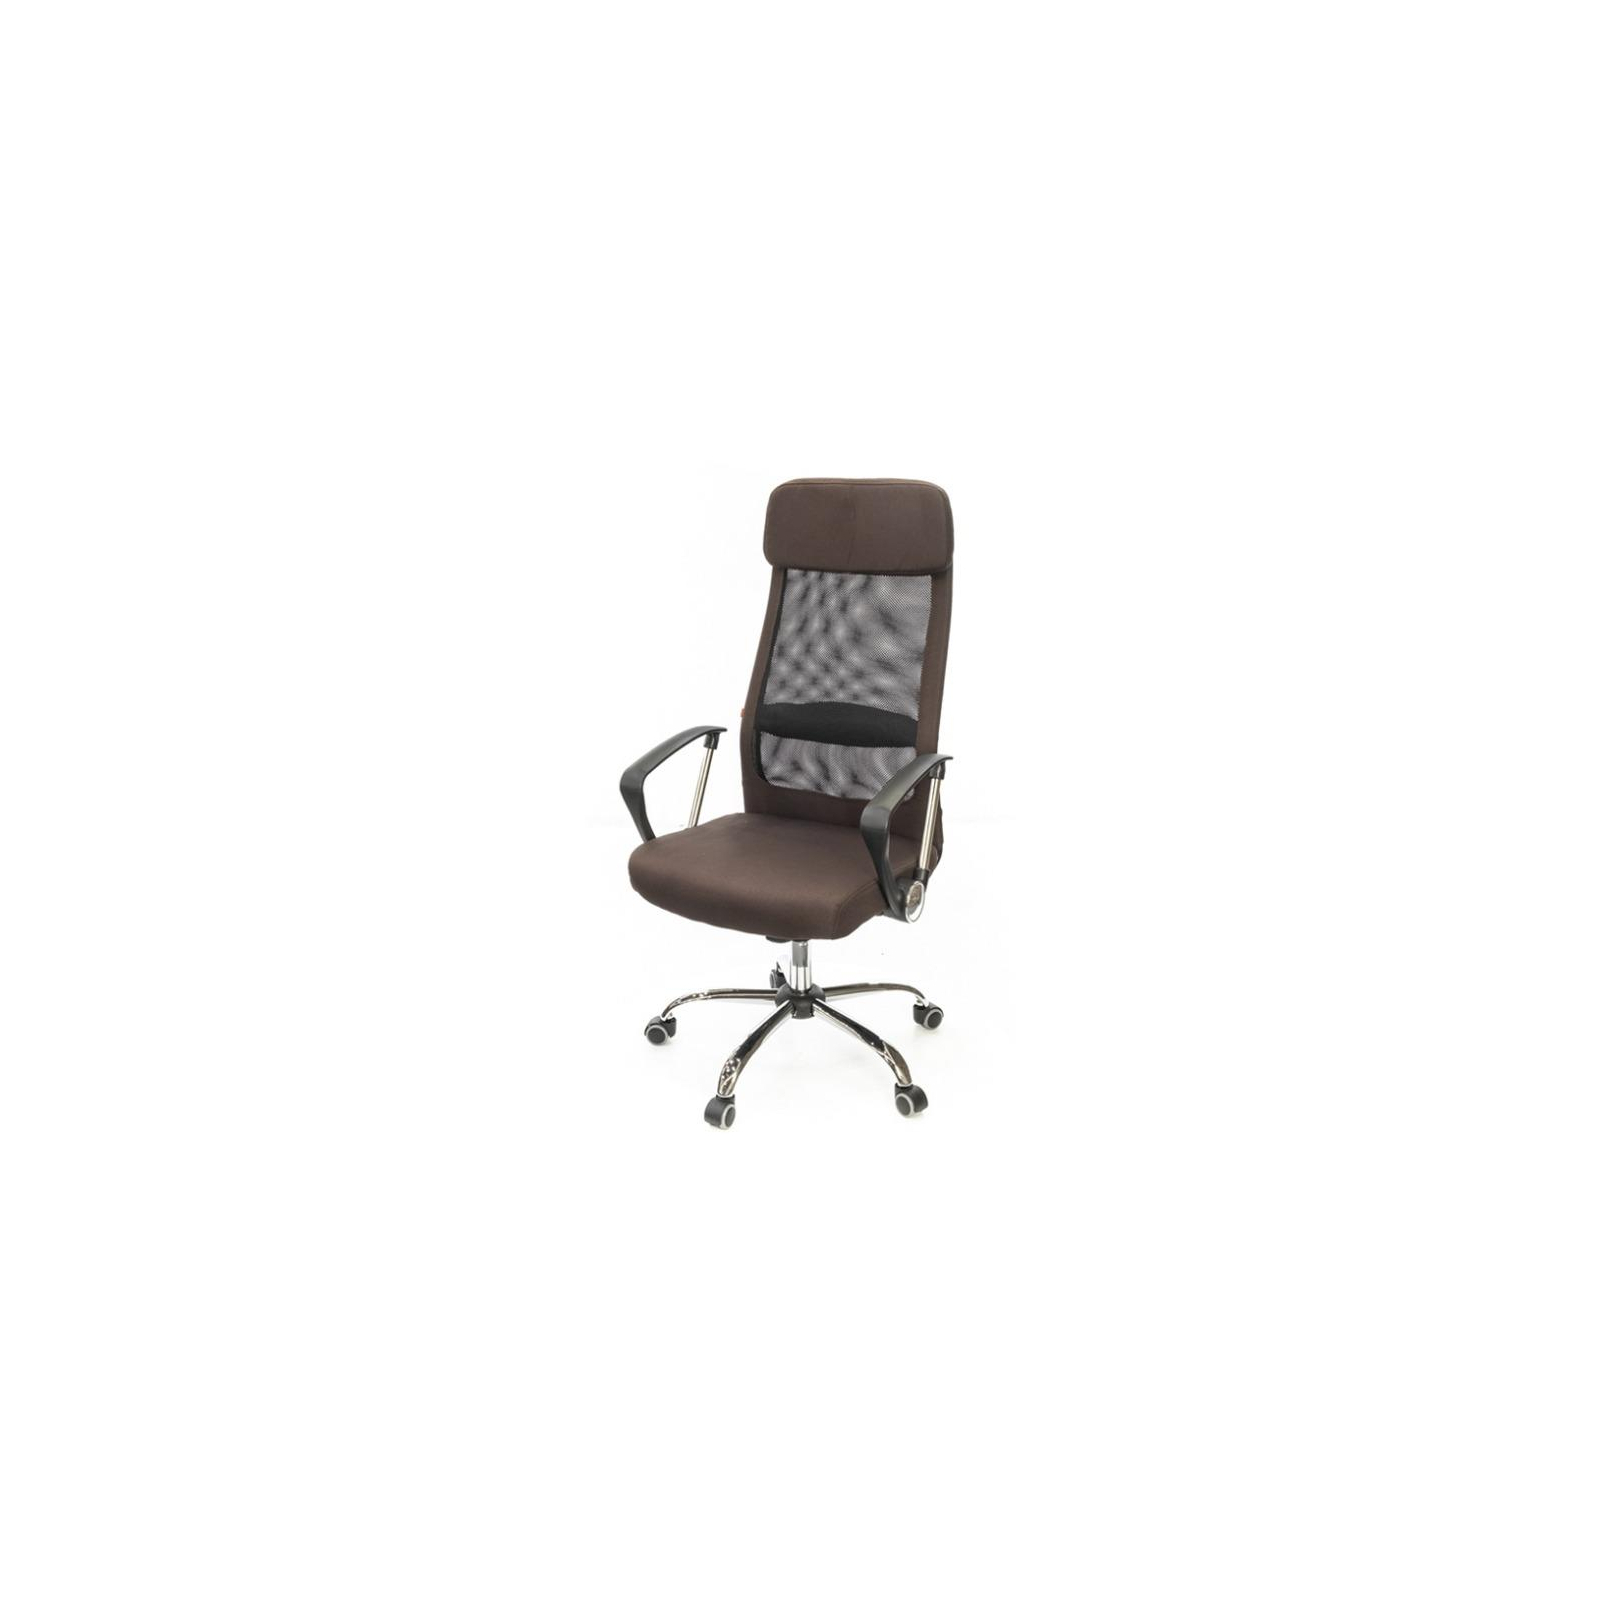 Офисное кресло Аклас Гилмор FX CH TILT Серое (10920)